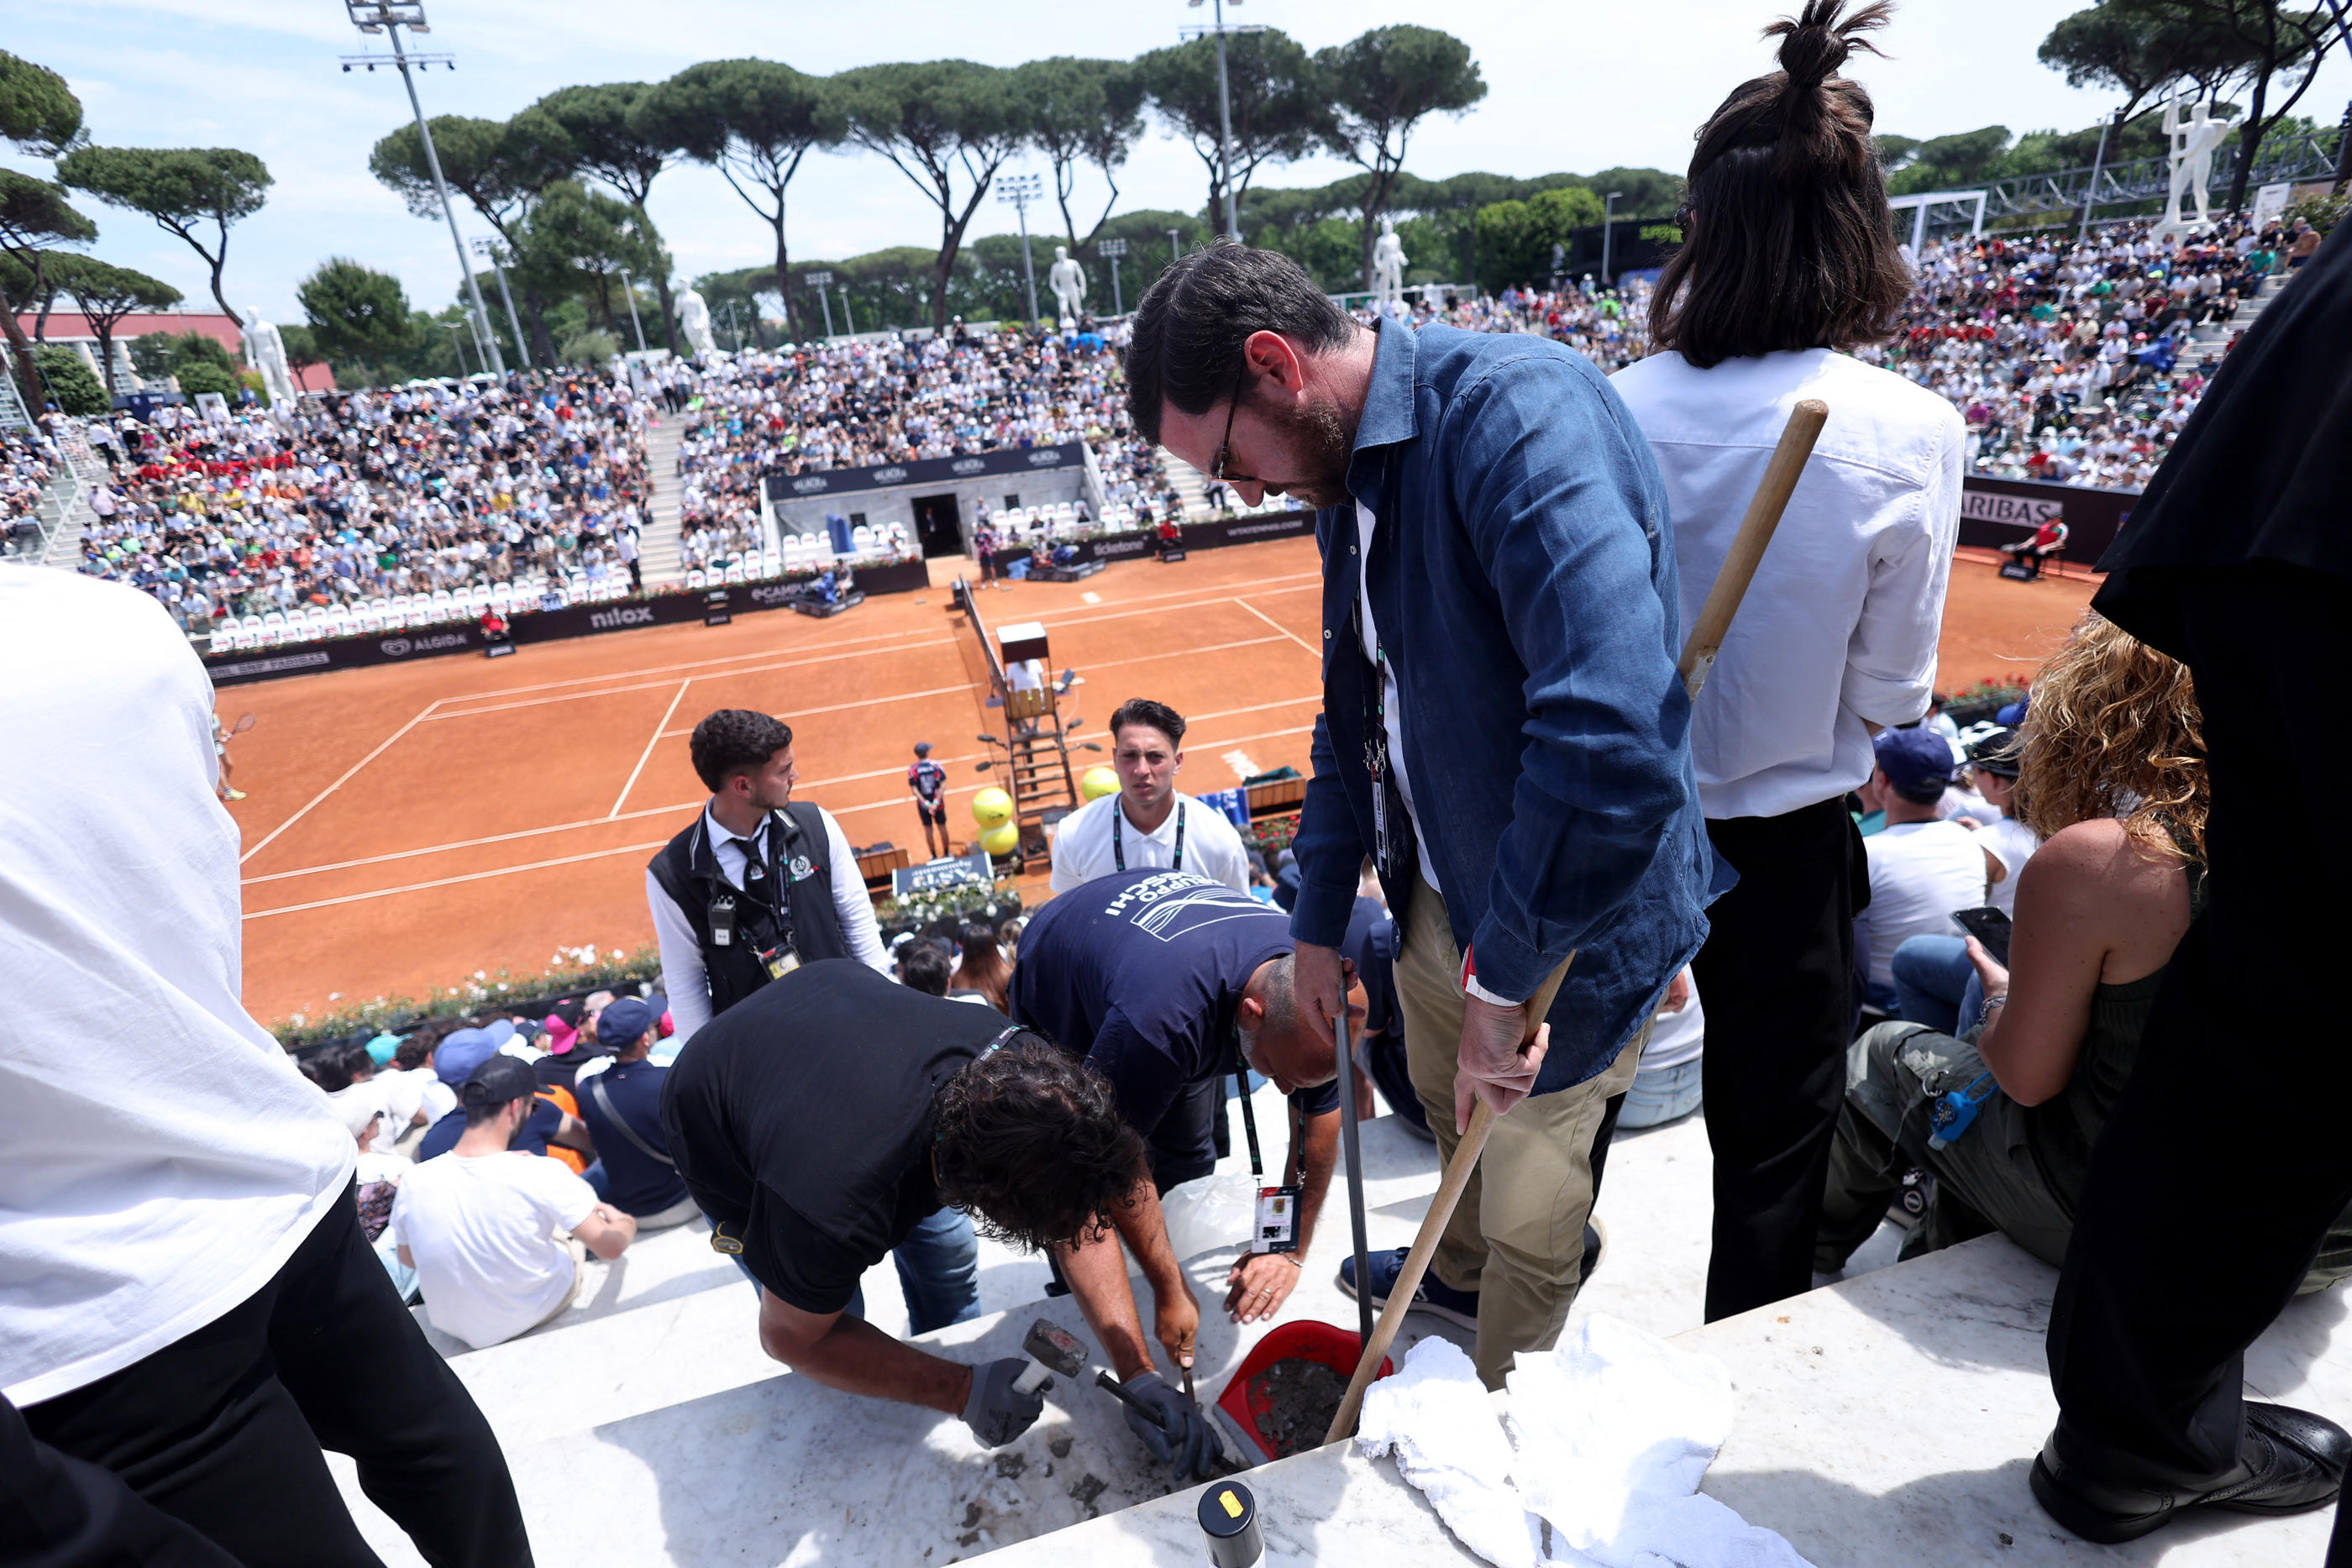 Deux matches du tournoi de tennis de Rome ont été stoppés par l'entrée sur le terrain de militants écologistes du groupe "Dernière génération". REUTERS/Claudia Greco